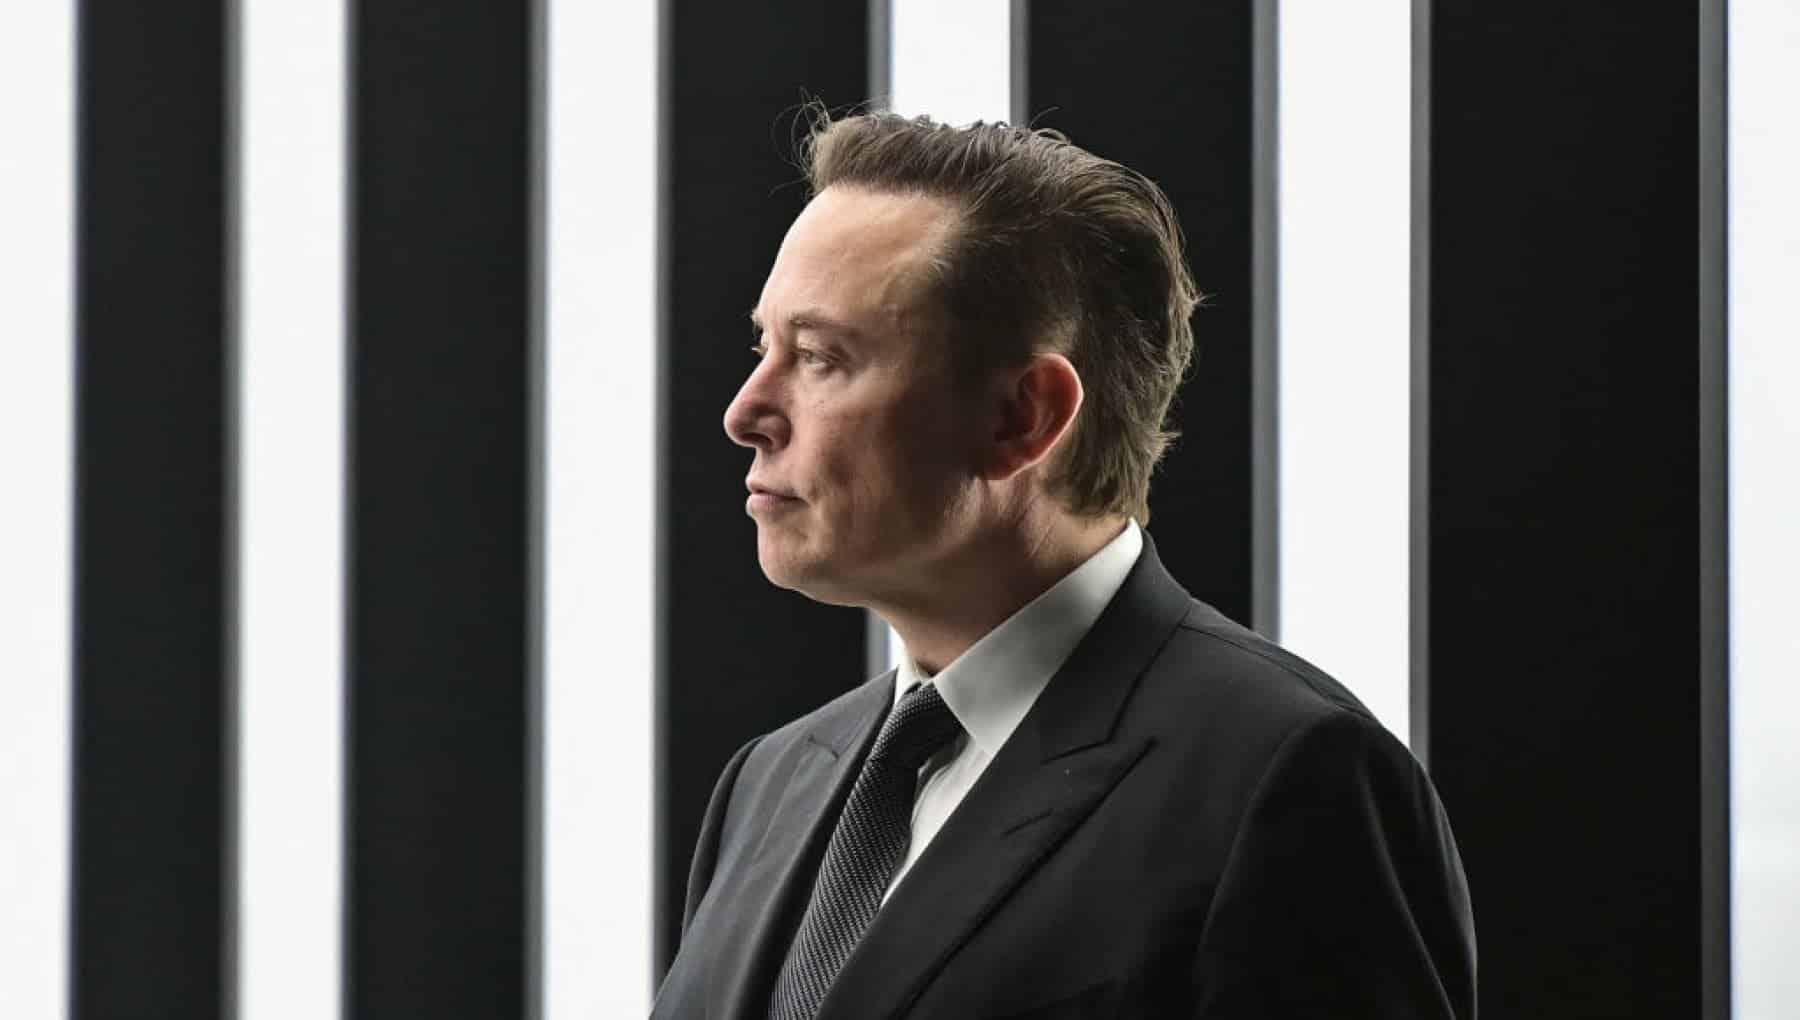 L’ex stabilimento Maserati a Torino interessa a Elon Musk? Cosa c’è dietro